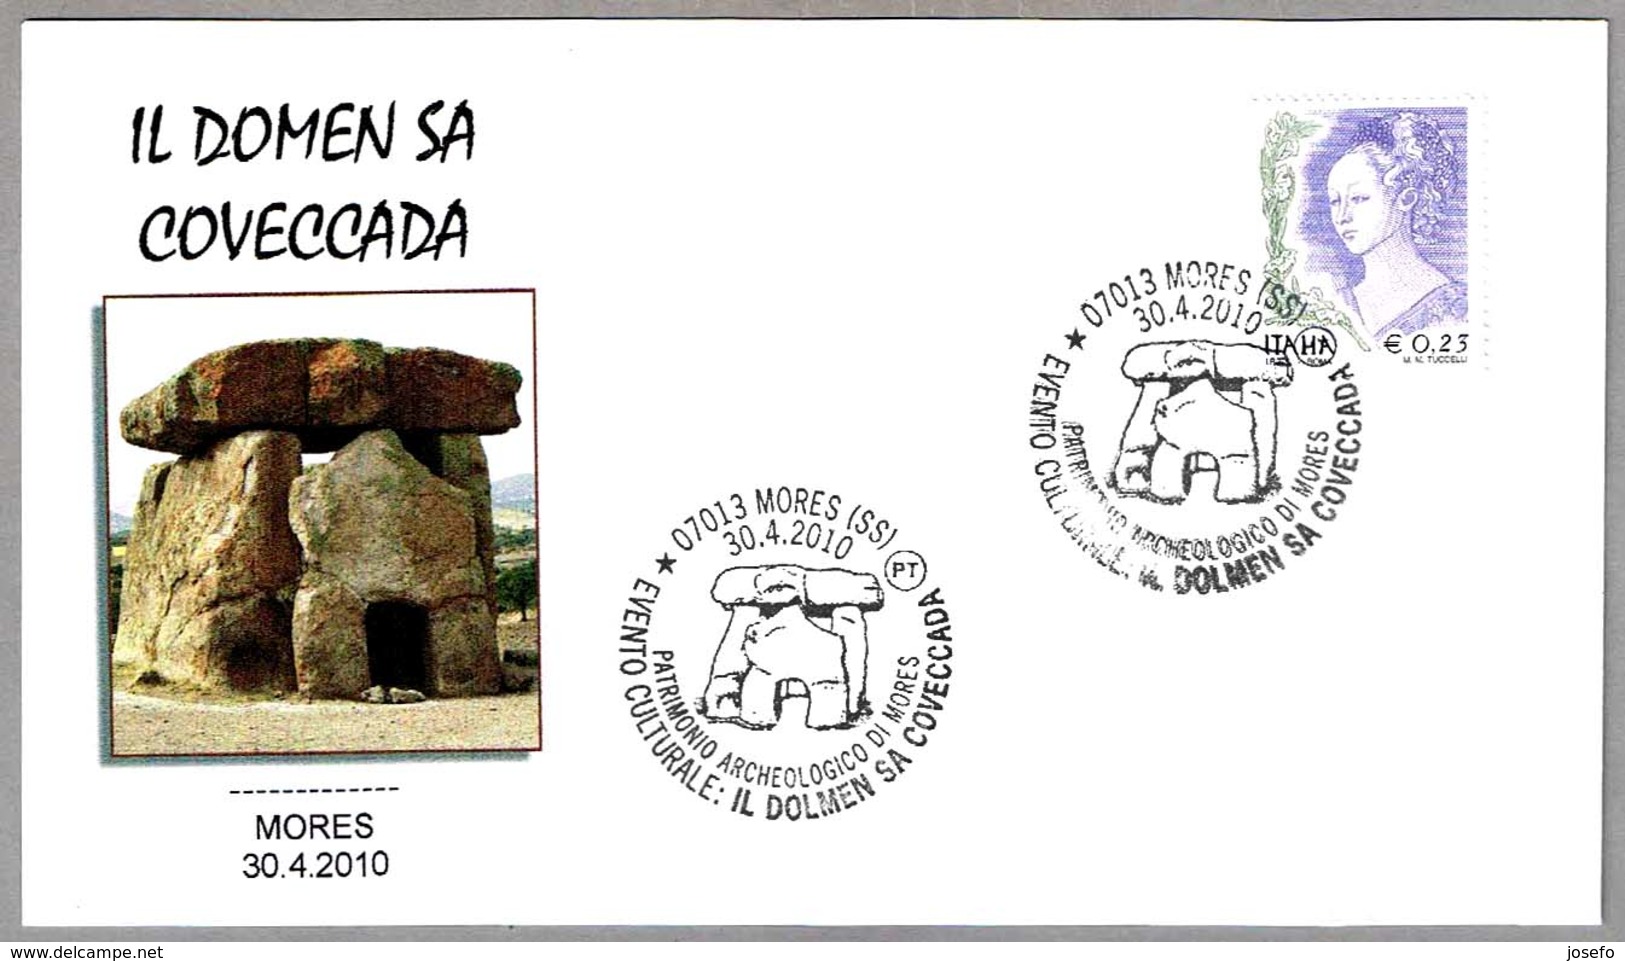 DOLMEN SA COVECCADA. Mores, Sassari, 2010 - Prehistory